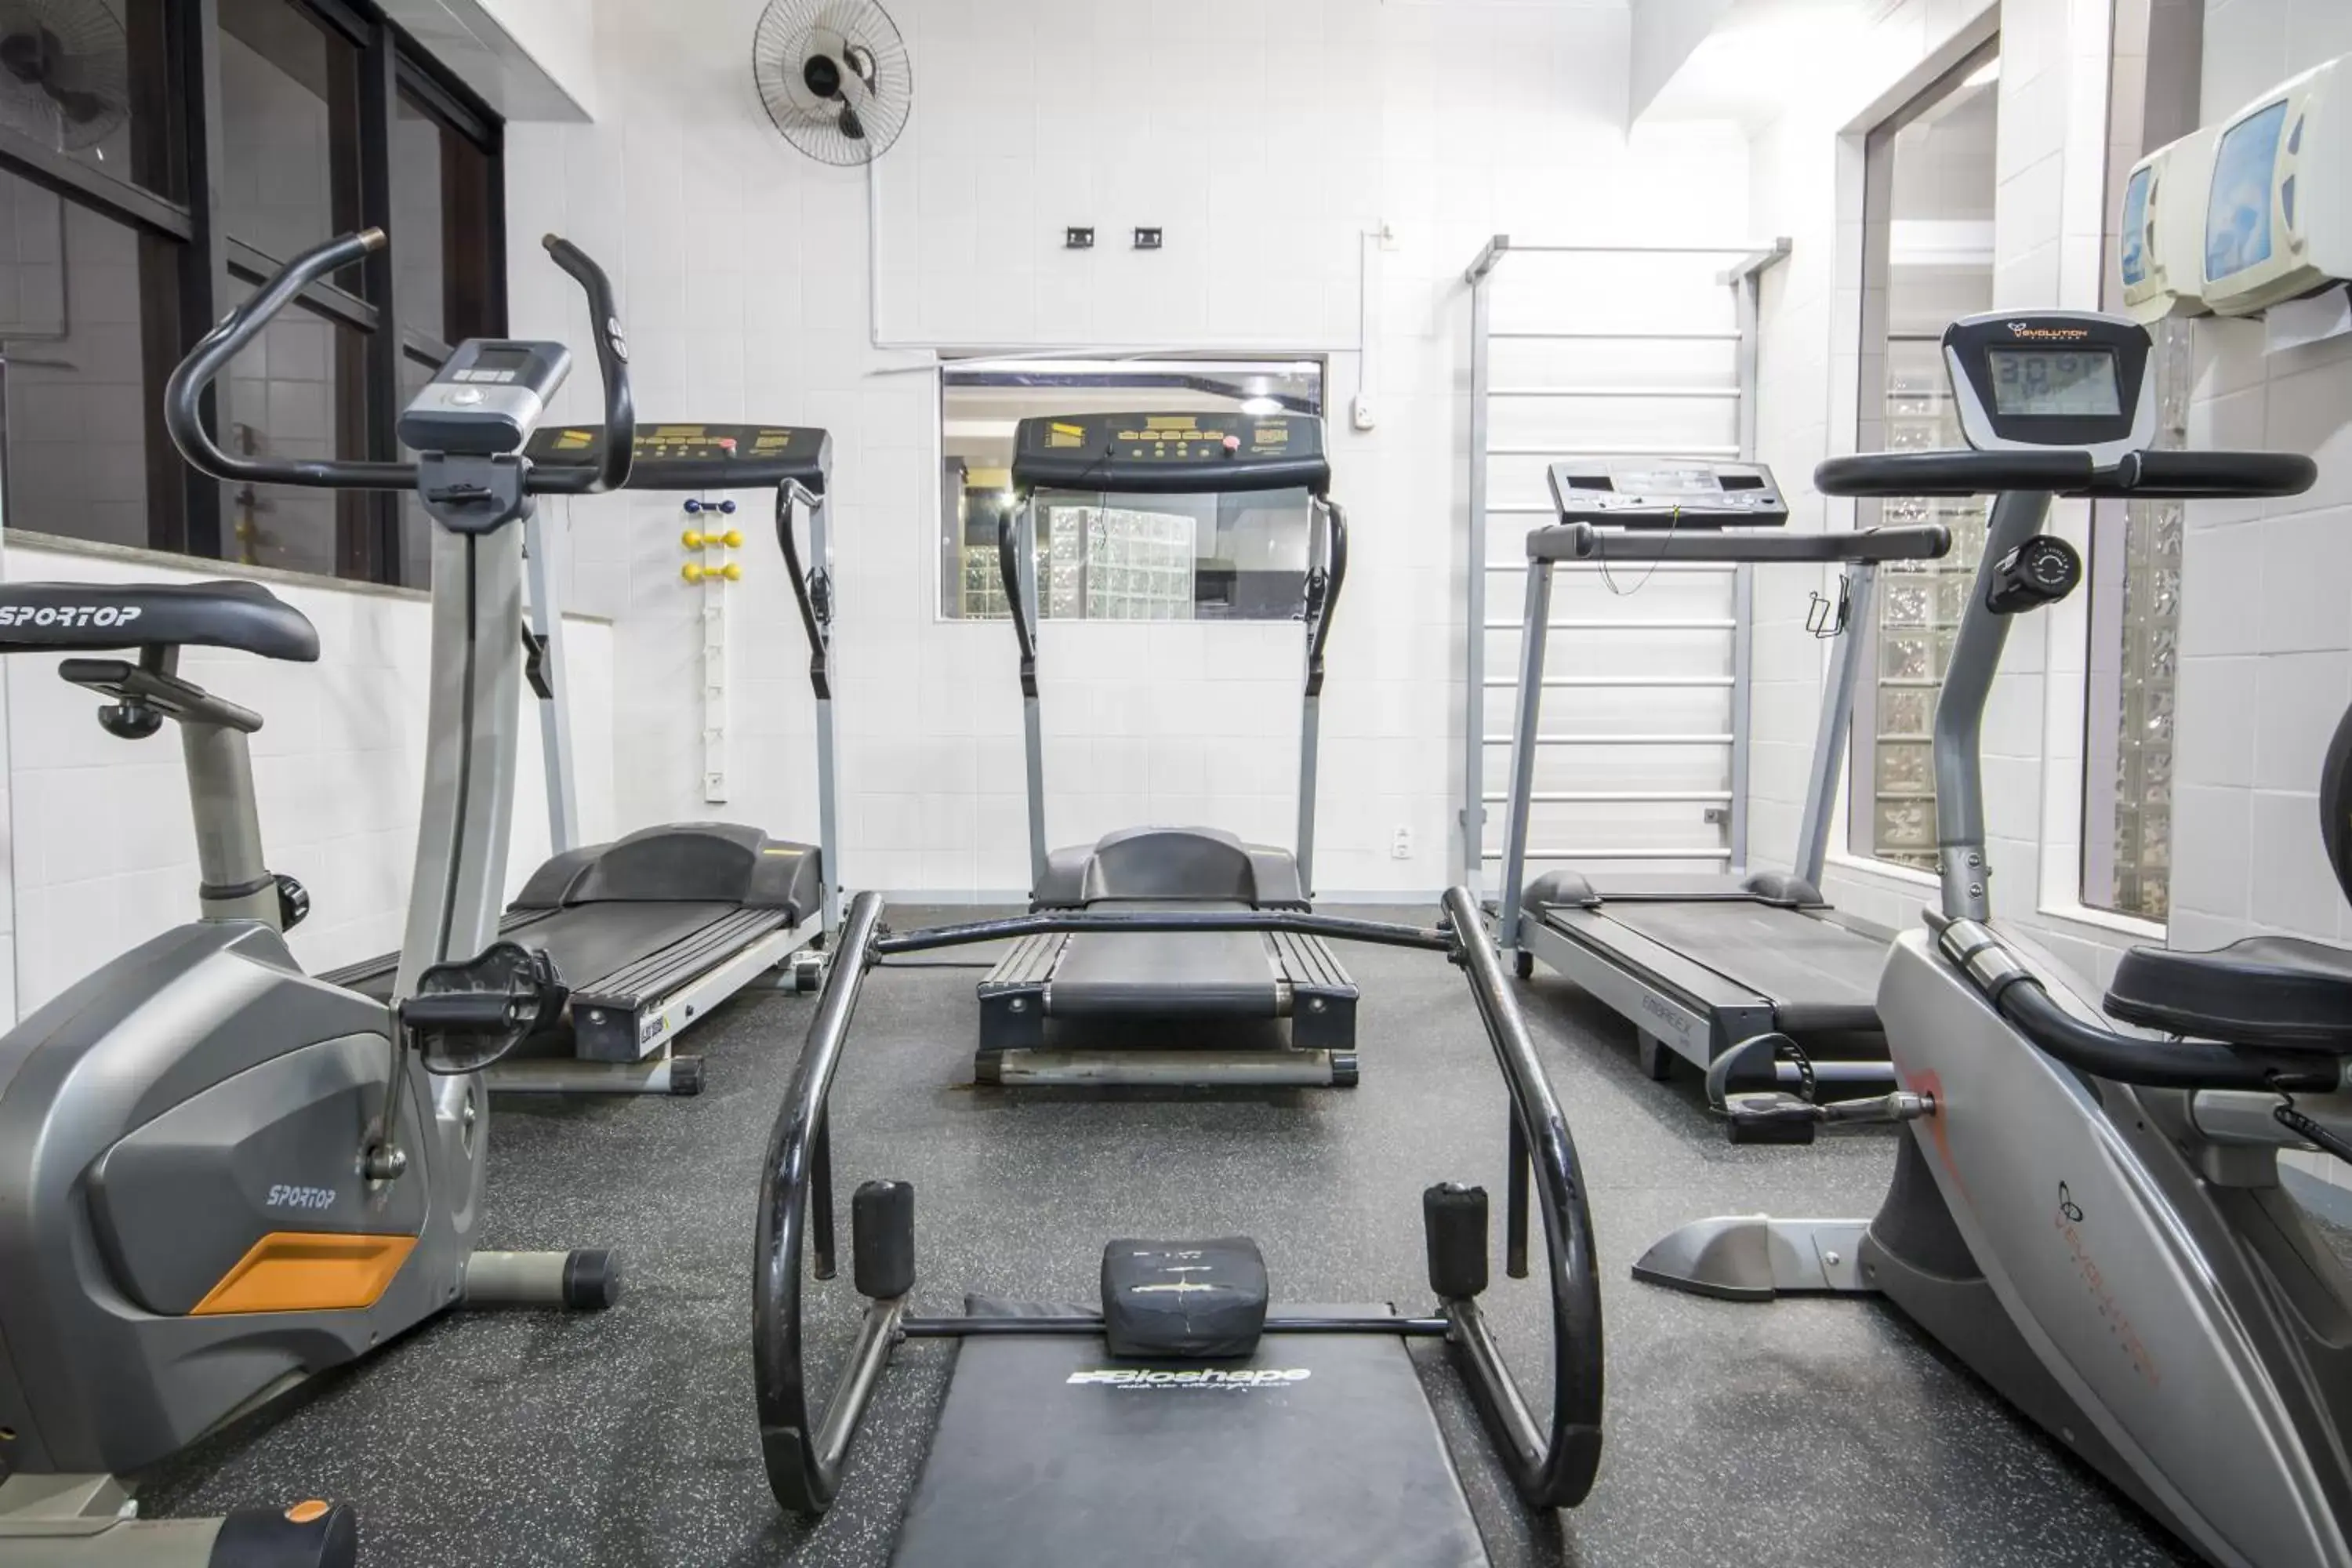 Fitness centre/facilities, Fitness Center/Facilities in Dan Inn Sorocaba